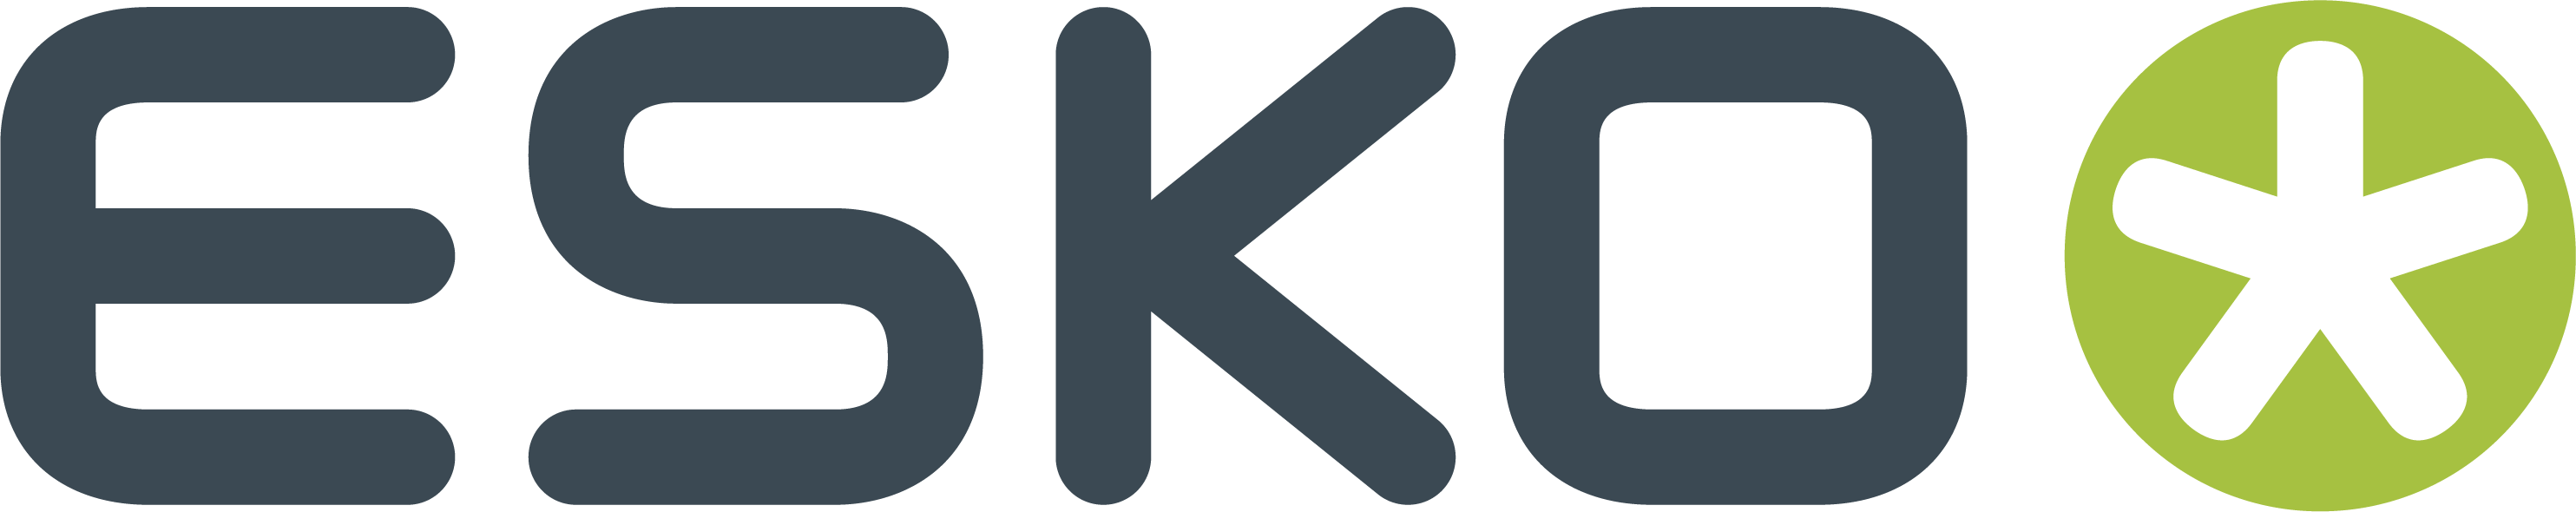 Esko logo CMYK positive